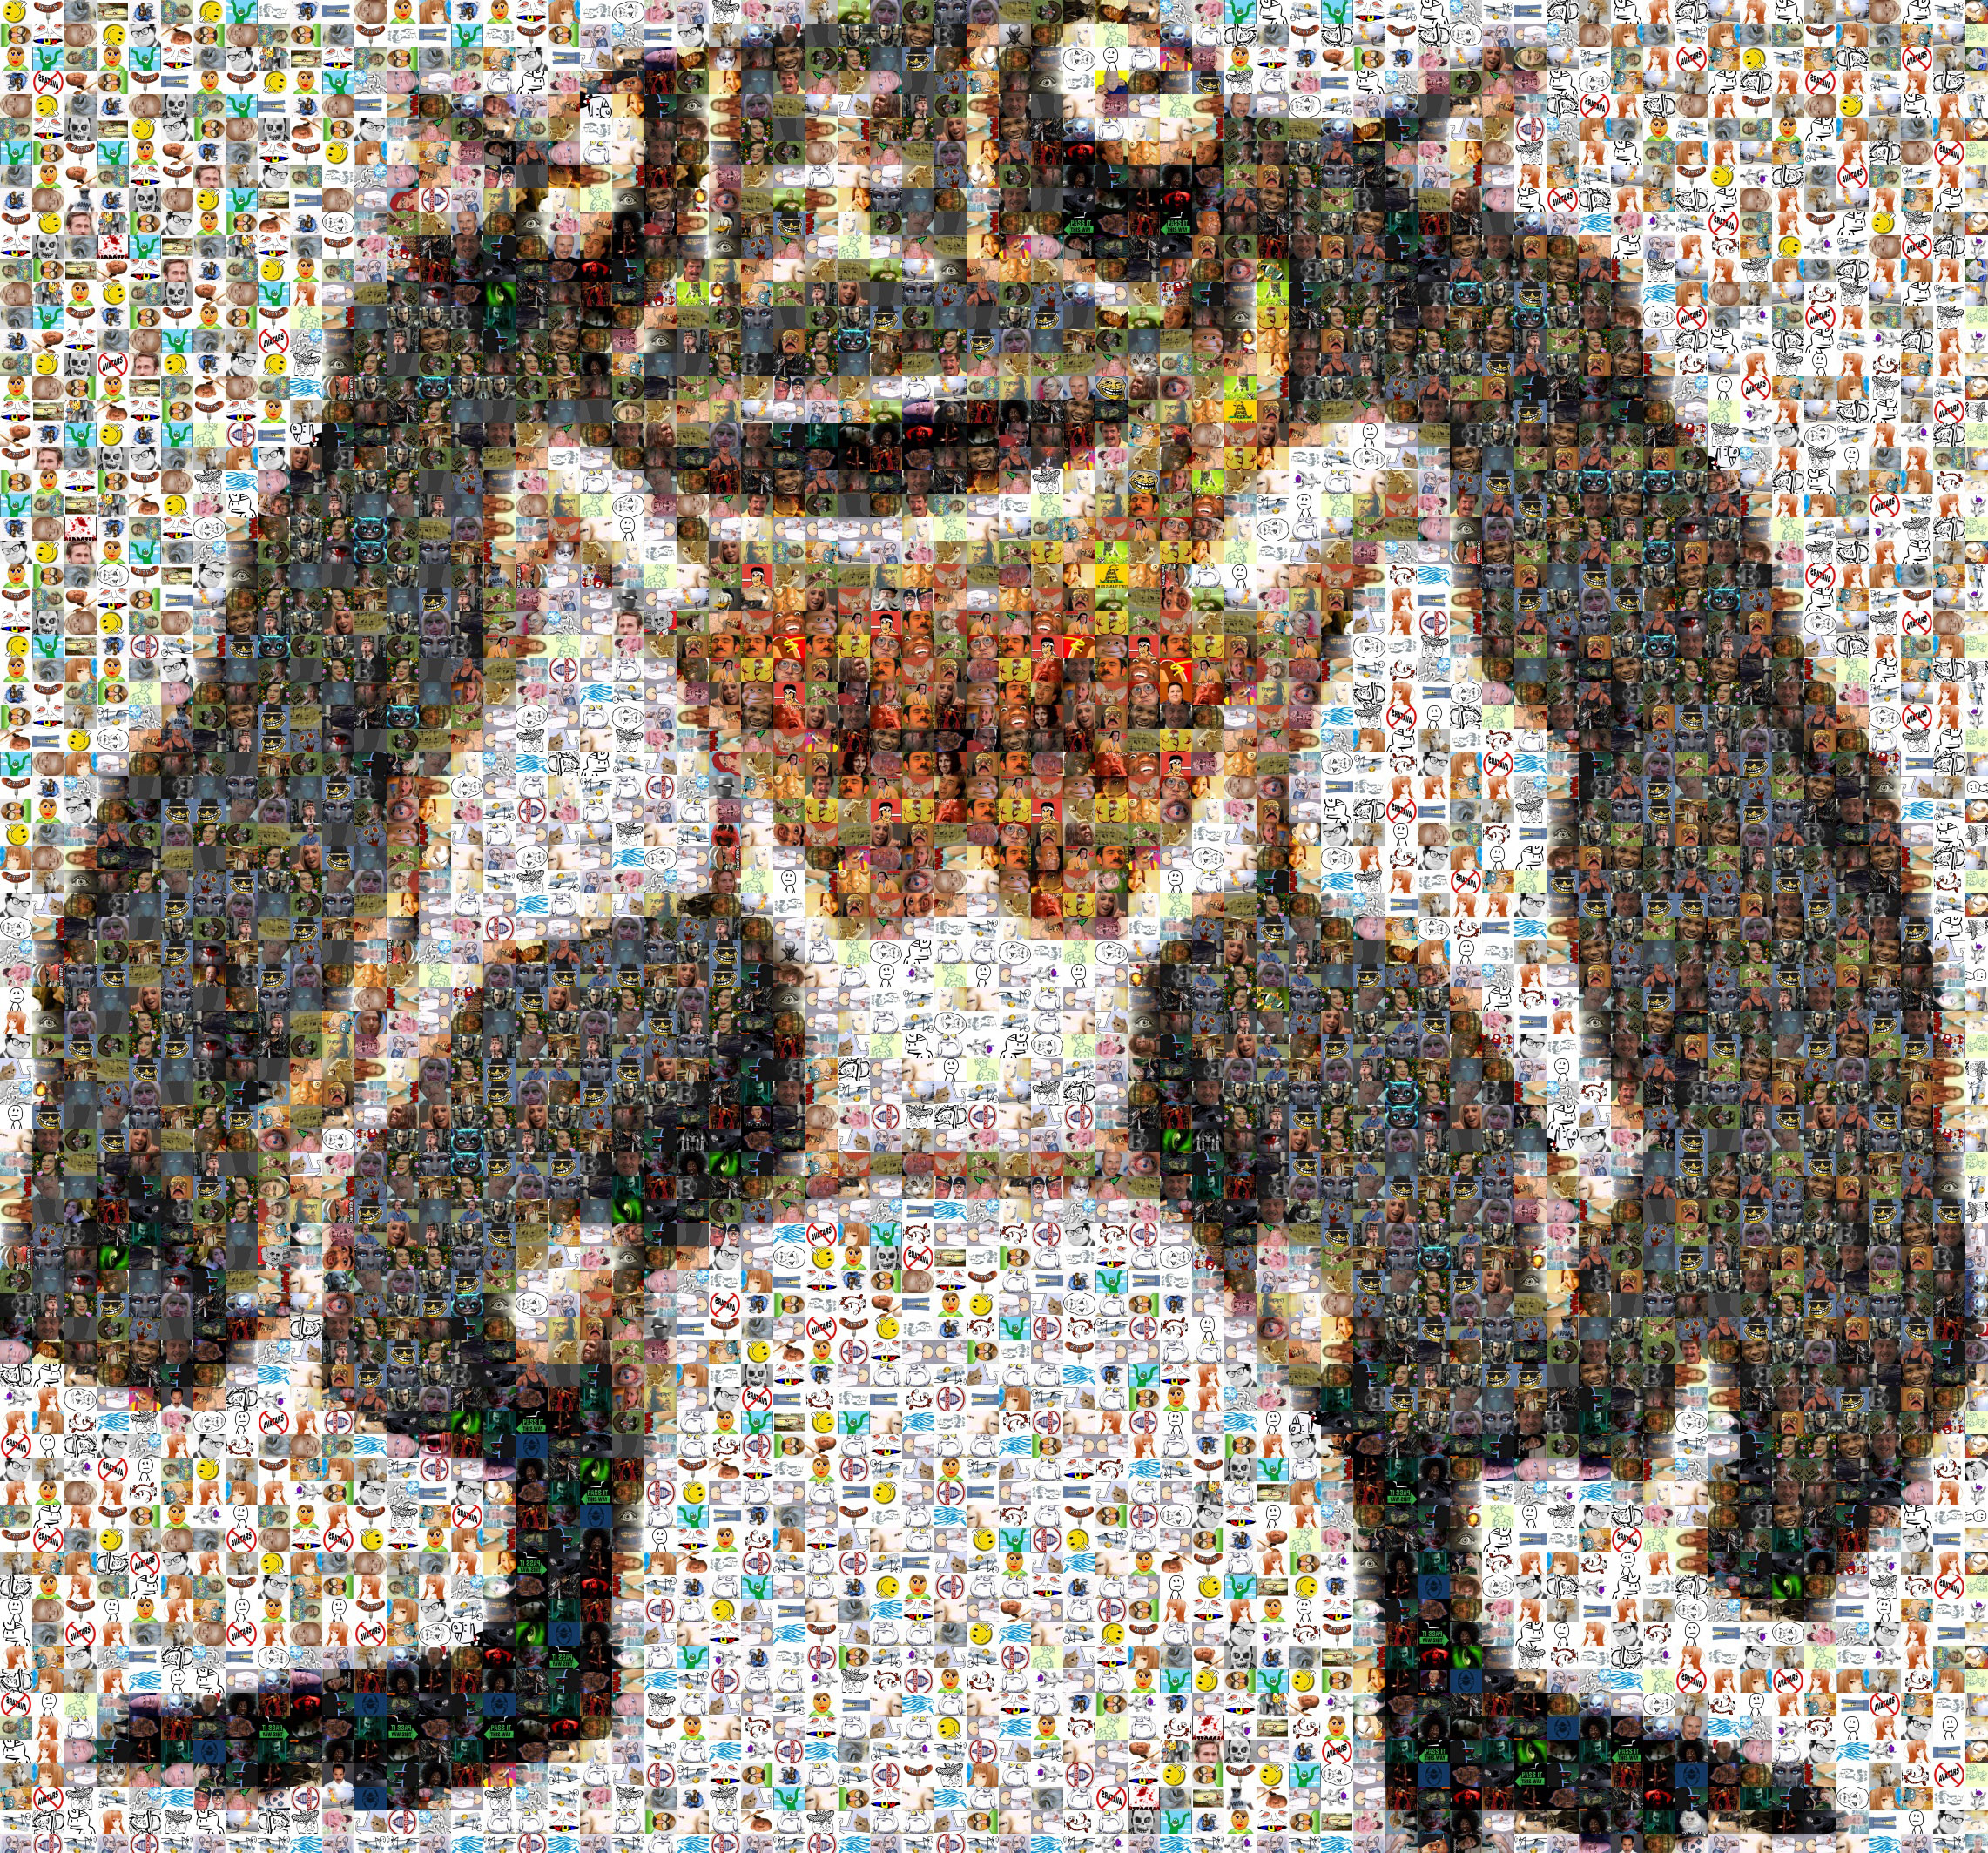 FrogBob